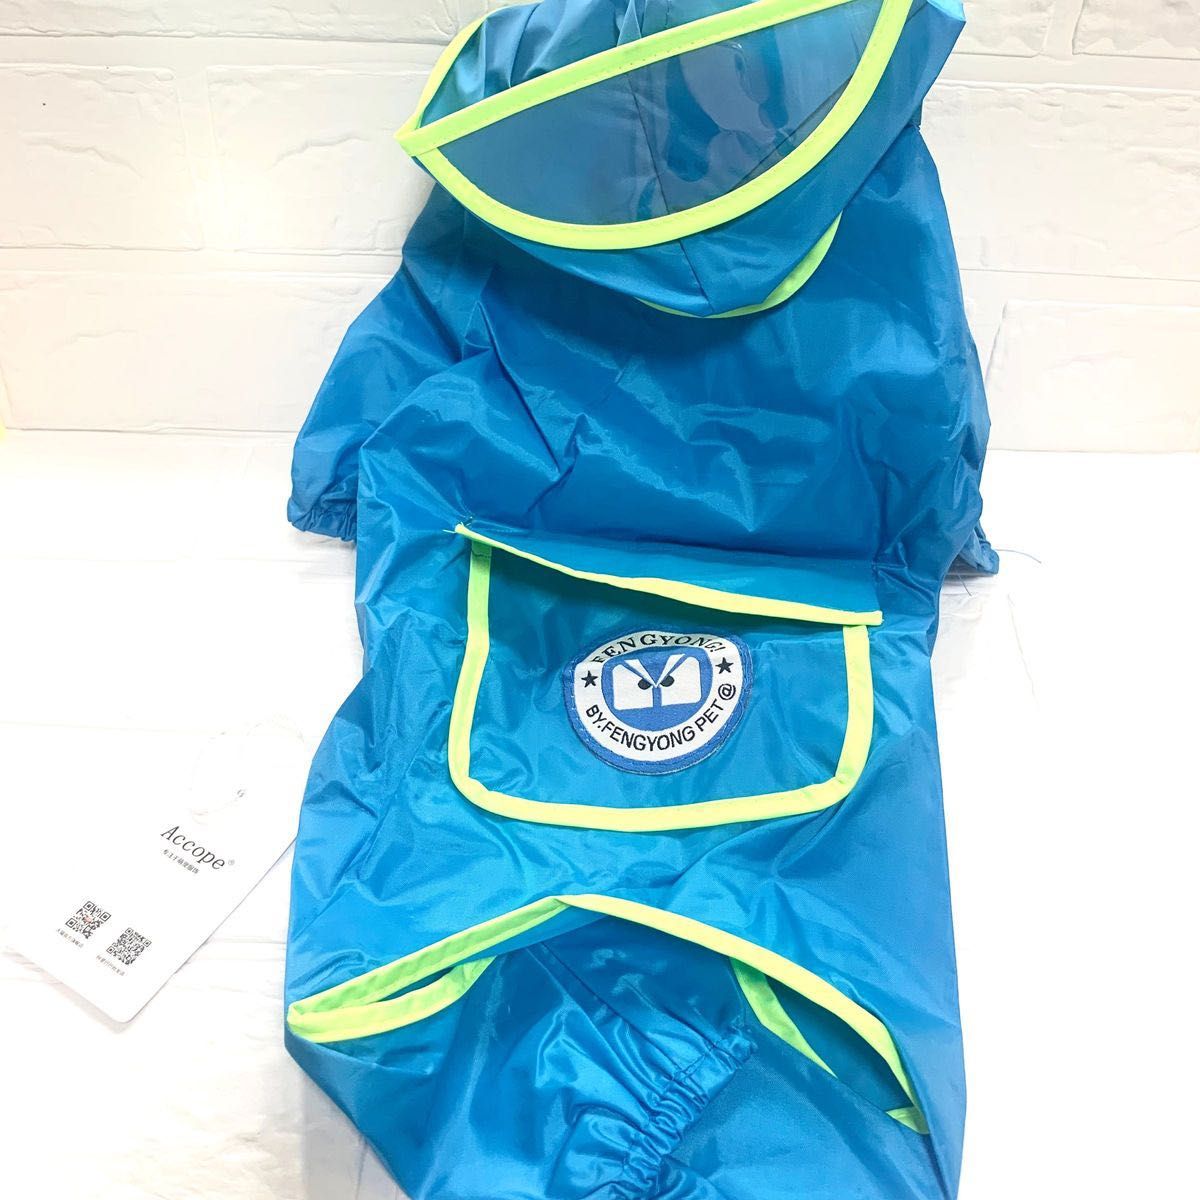 ブルーL 犬用 レインコート ポンチョ 雨の日のお散歩に 防水コート フード付き レインウェア レインコート ドッグウェア カッパ